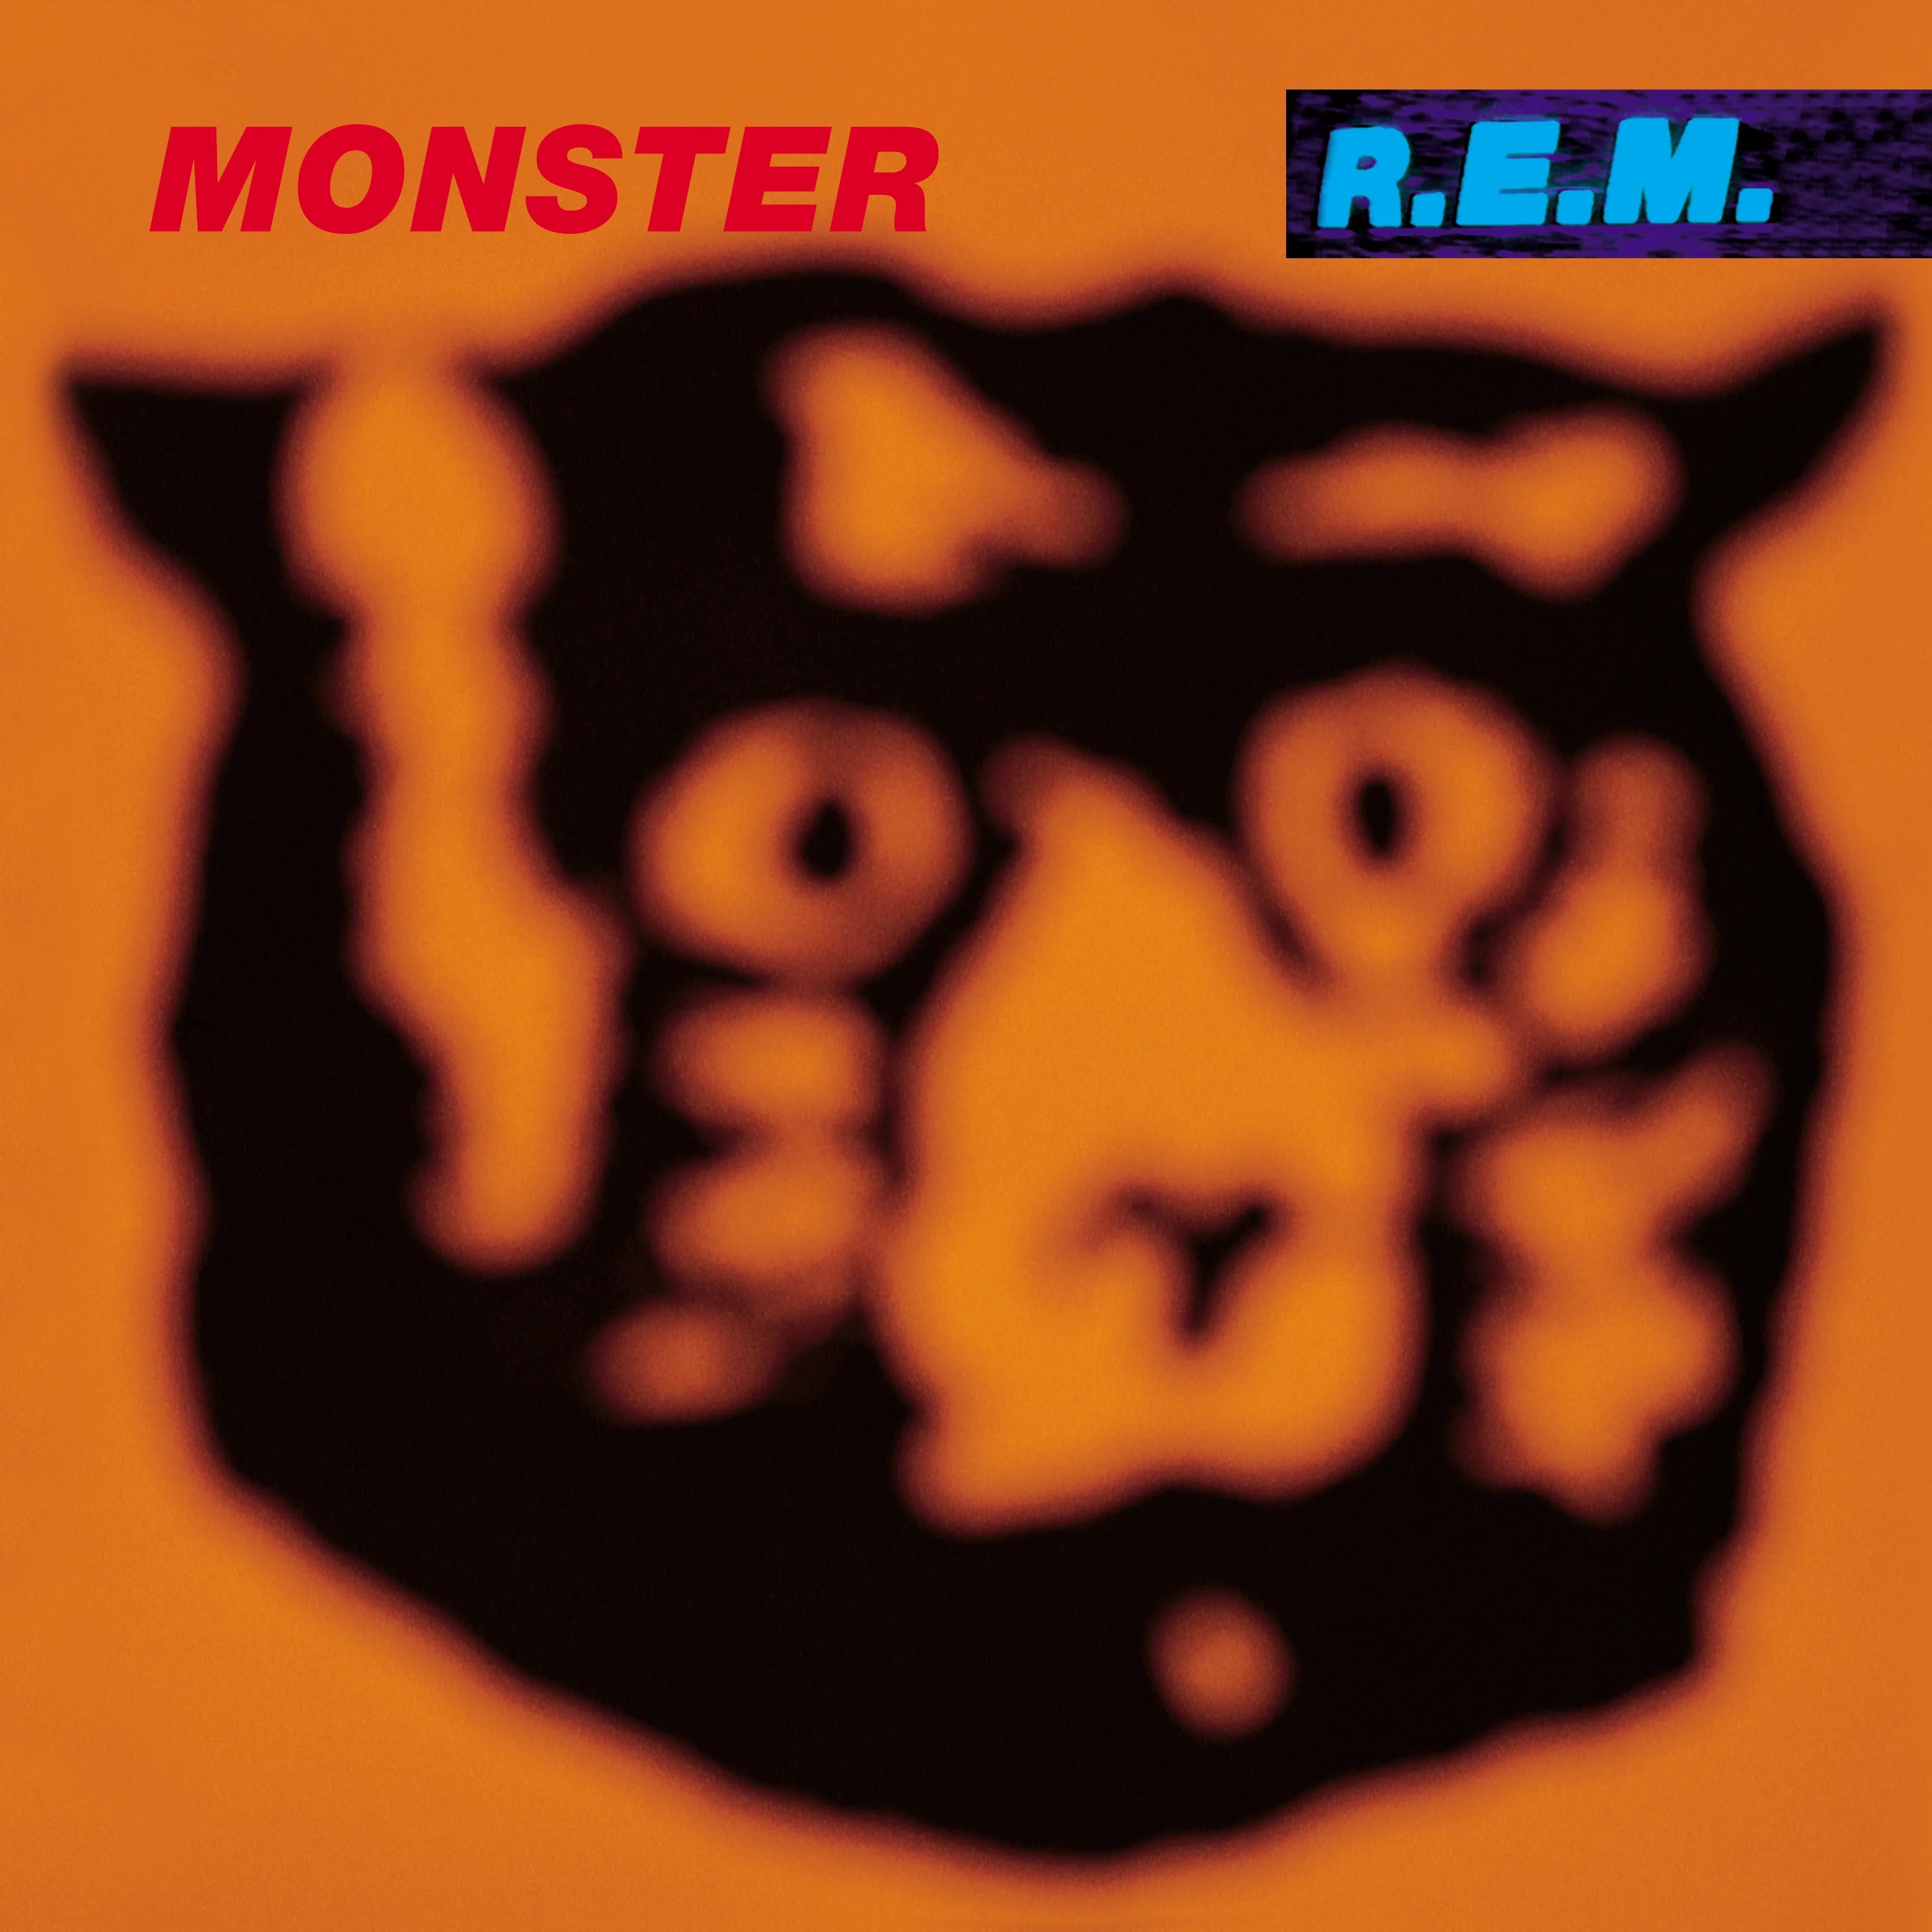 R.E.M. — Monster cover artwork